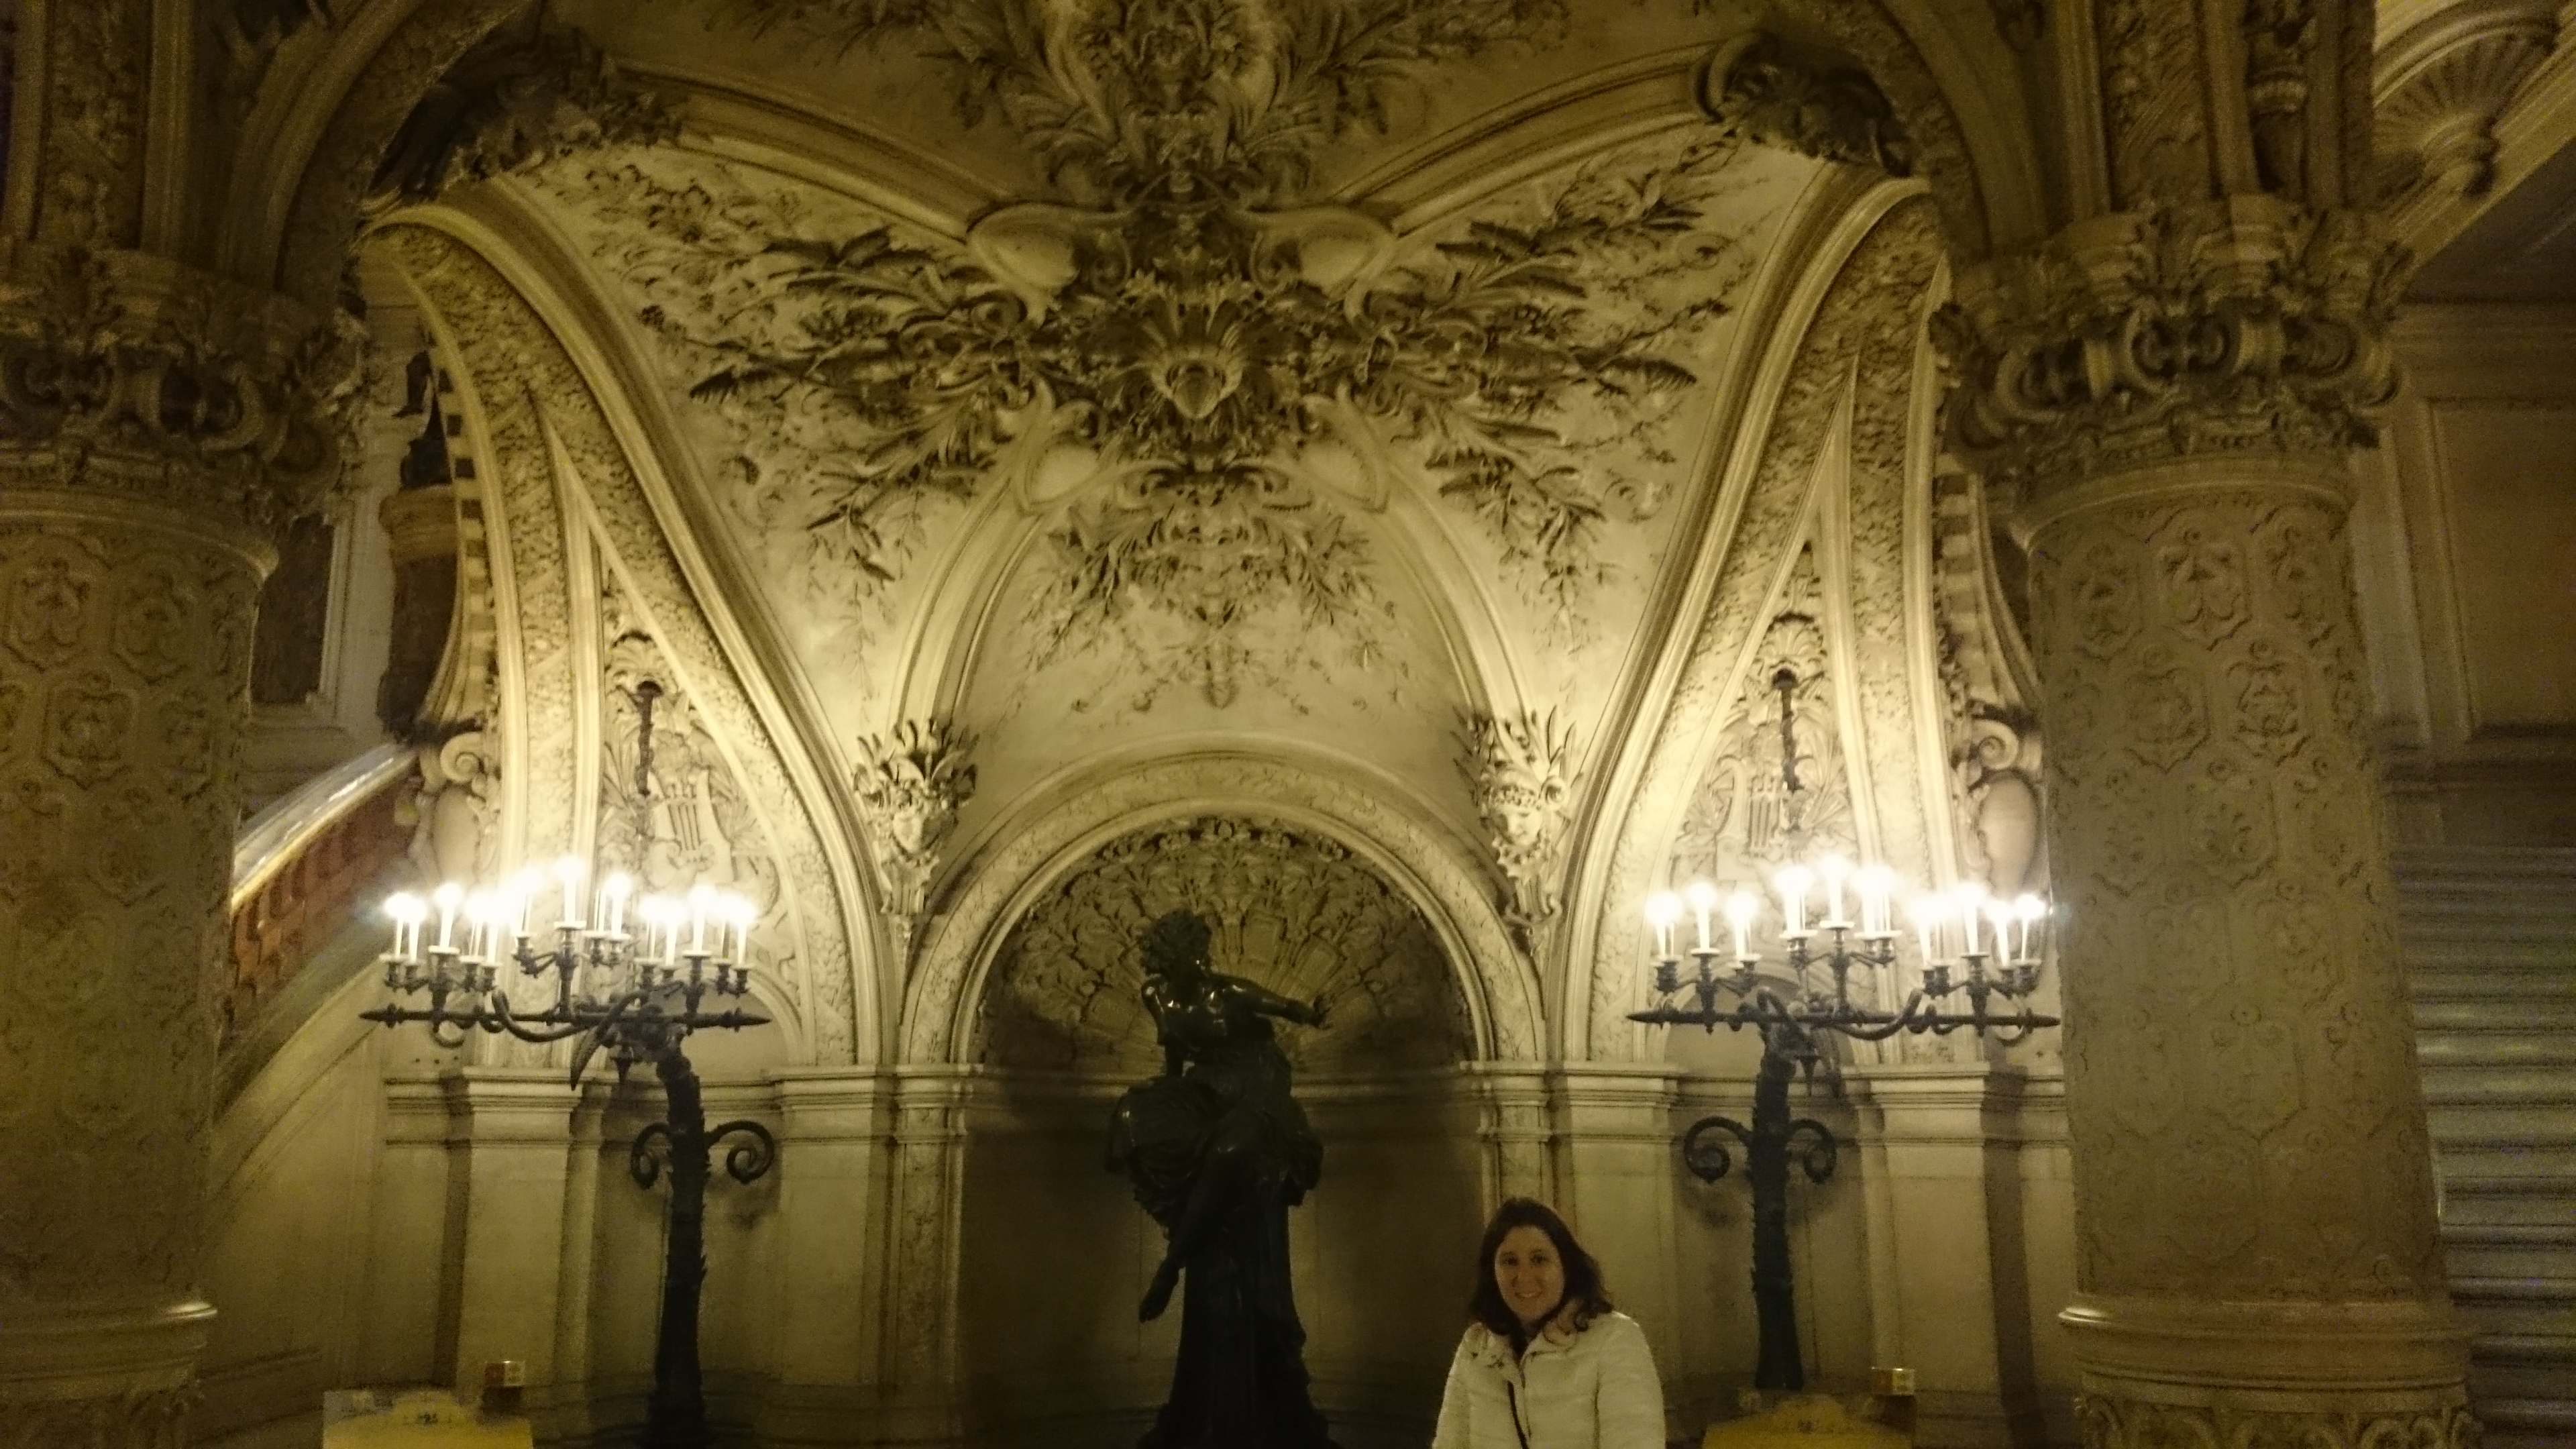 dsc 0996 - Una visita a la Opera de Paris (Palais Garnier)